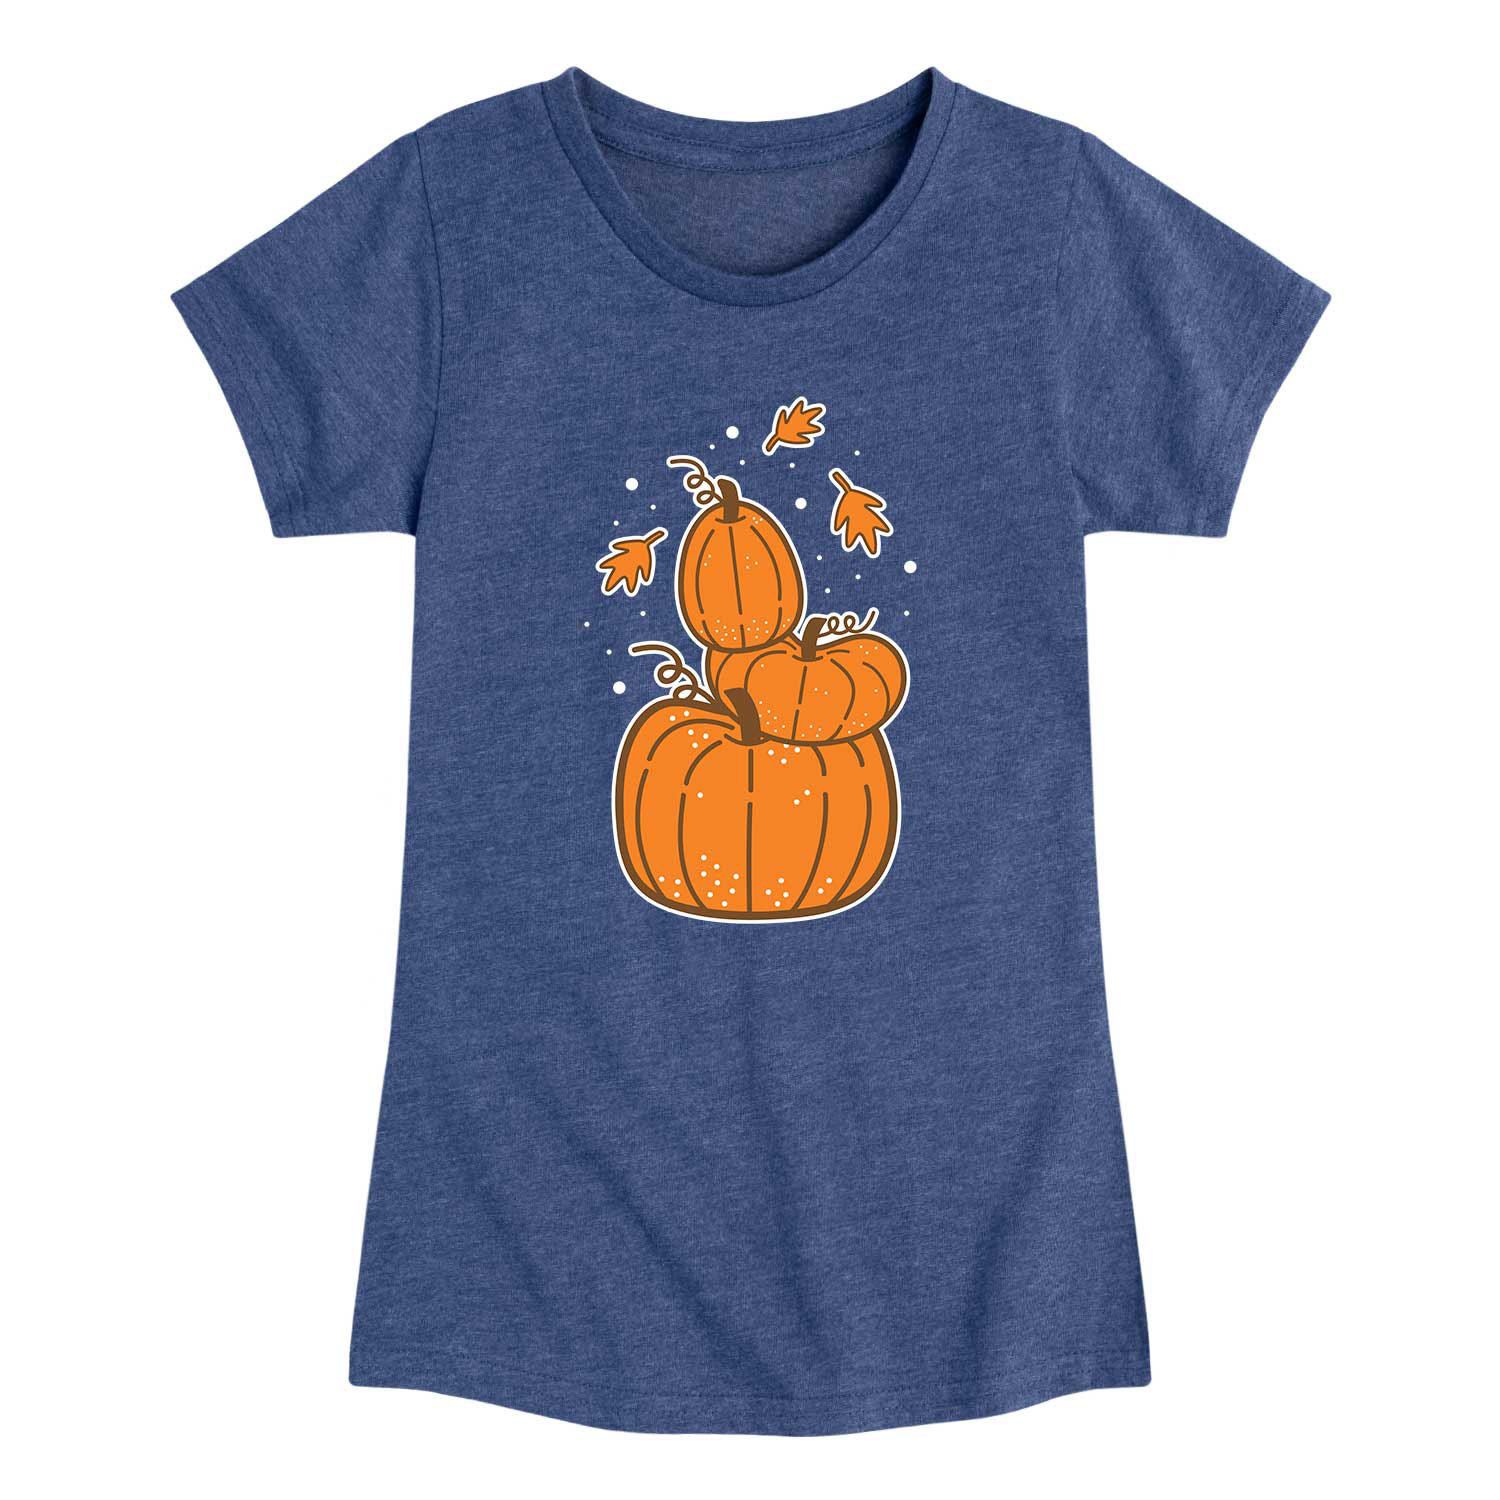 Осенняя футболка с рисунком тыквы для девочек 7–16 лет Licensed Character, синий футболка с рисунком конфет и тыквы для девочек 7–16 лет licensed character